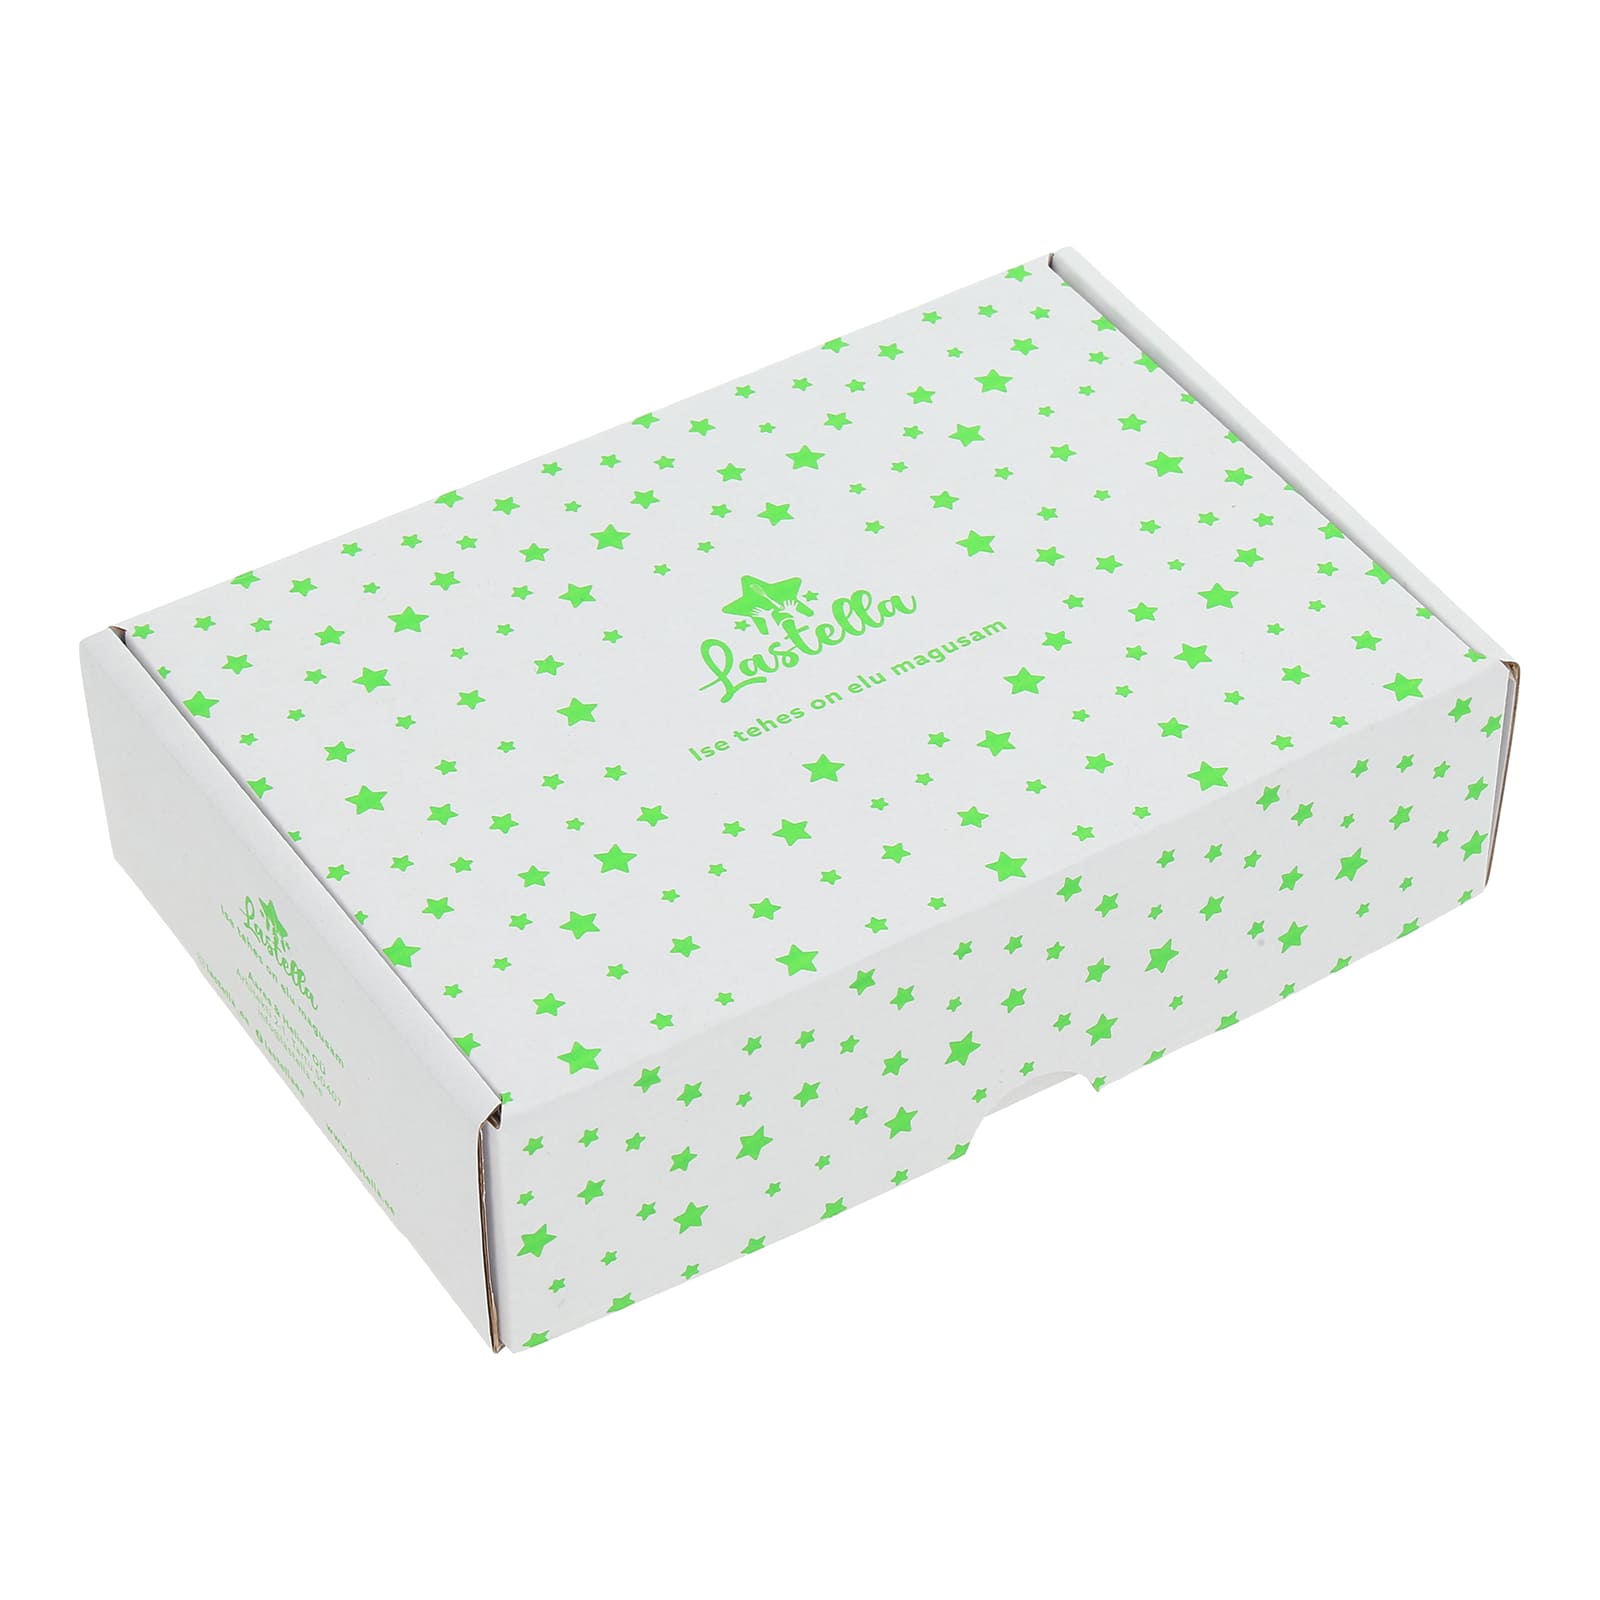 Коробка для упаковки продукции, с нанесенным логотипом